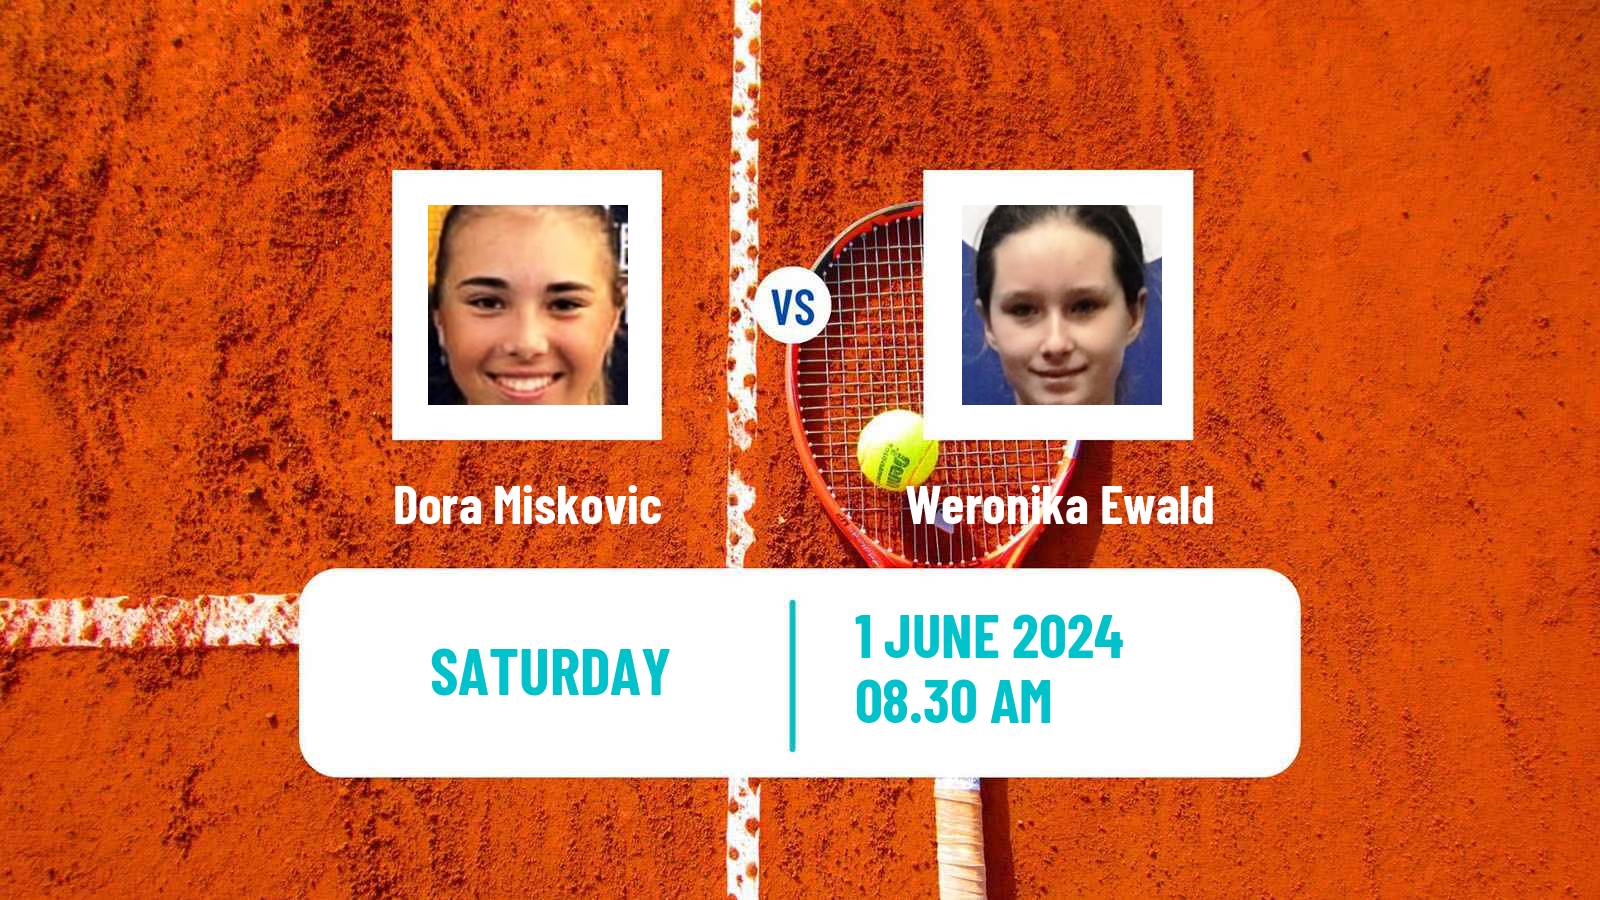 Tennis ITF W15 Bol 2 Women Dora Miskovic - Weronika Ewald